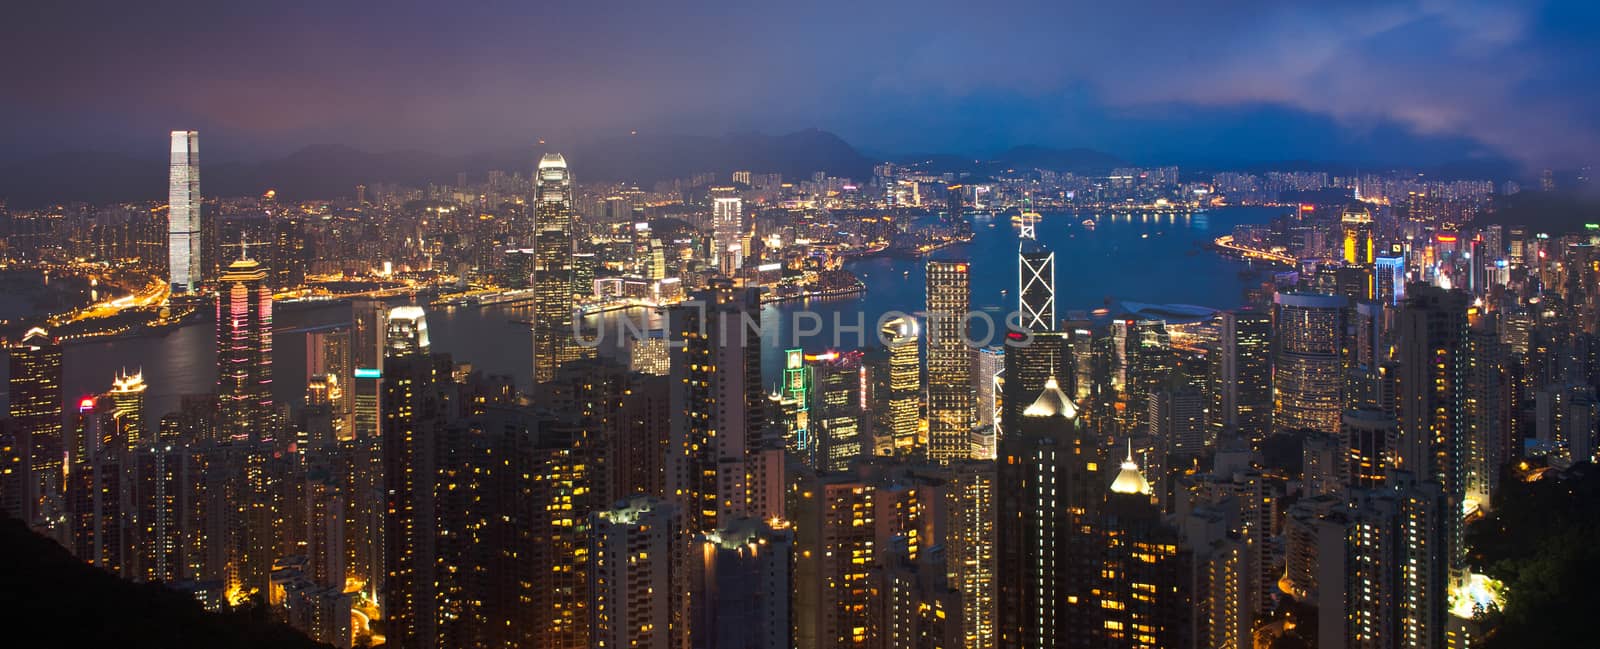 Hong Kong cityscape at night panorama by 2nix